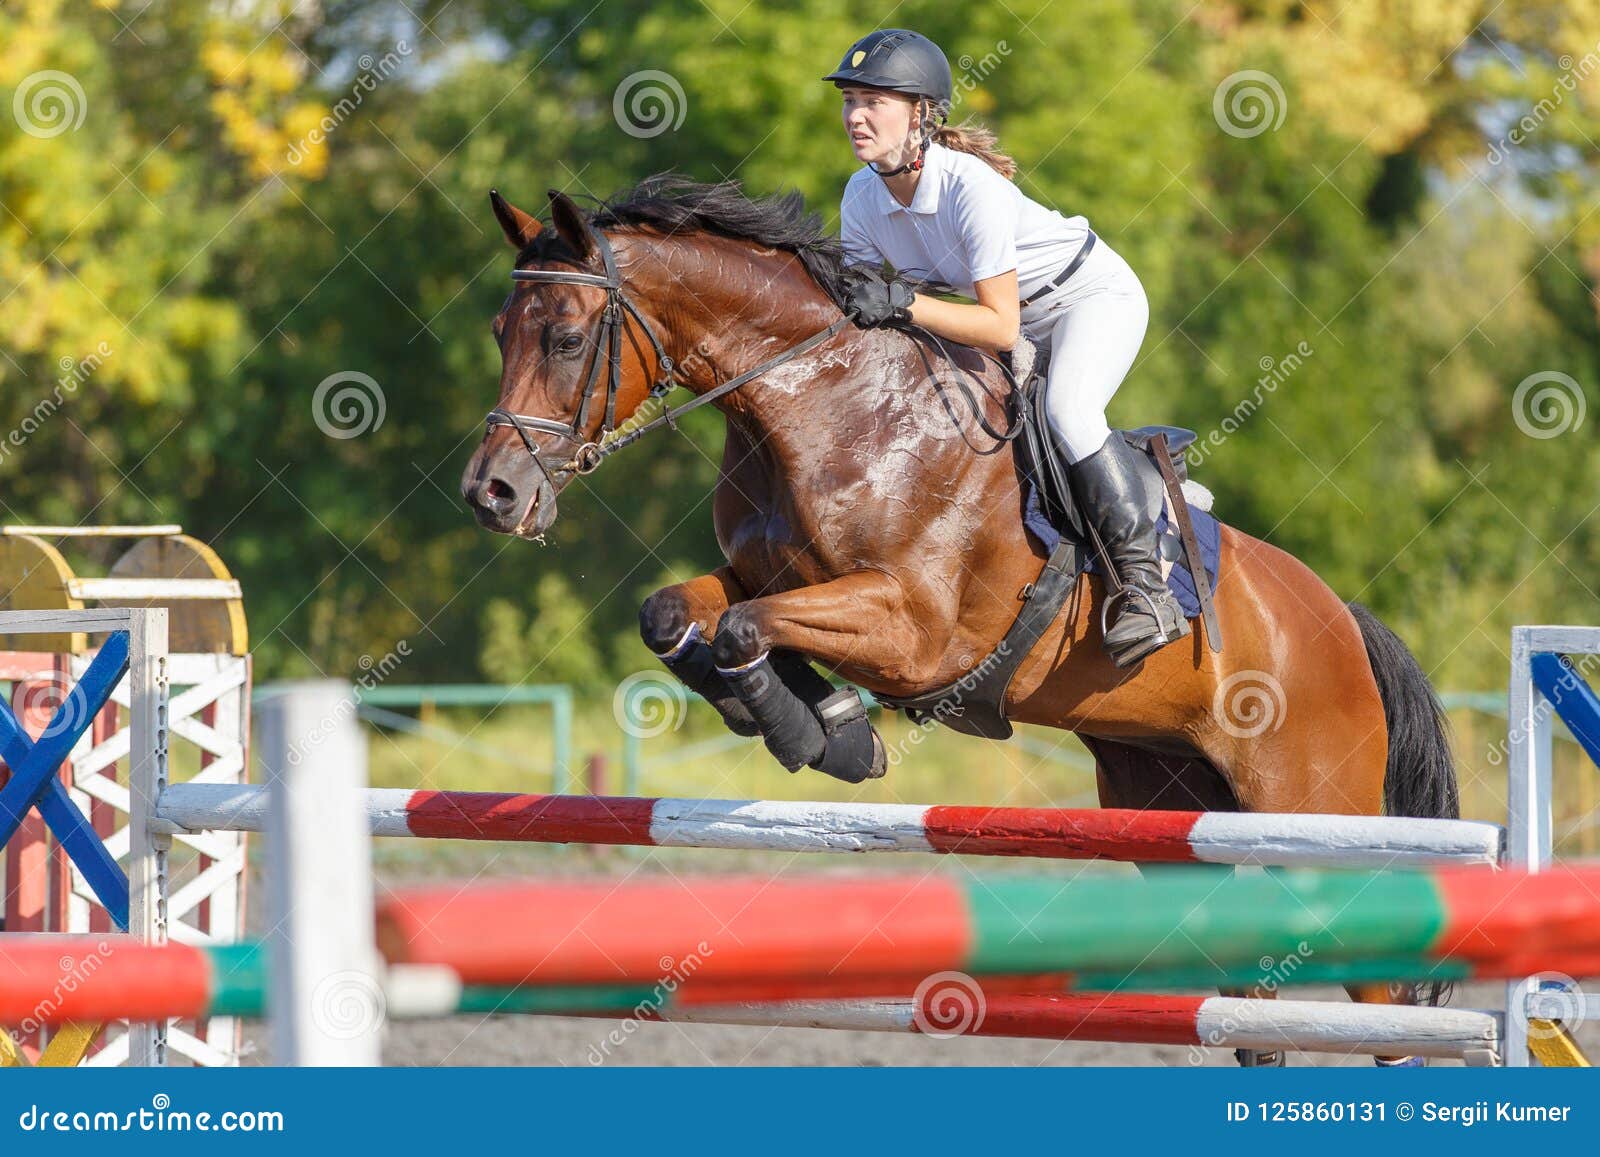 a cavalo saltos sobre a obstáculo. a cavalo cavalgando. pulando